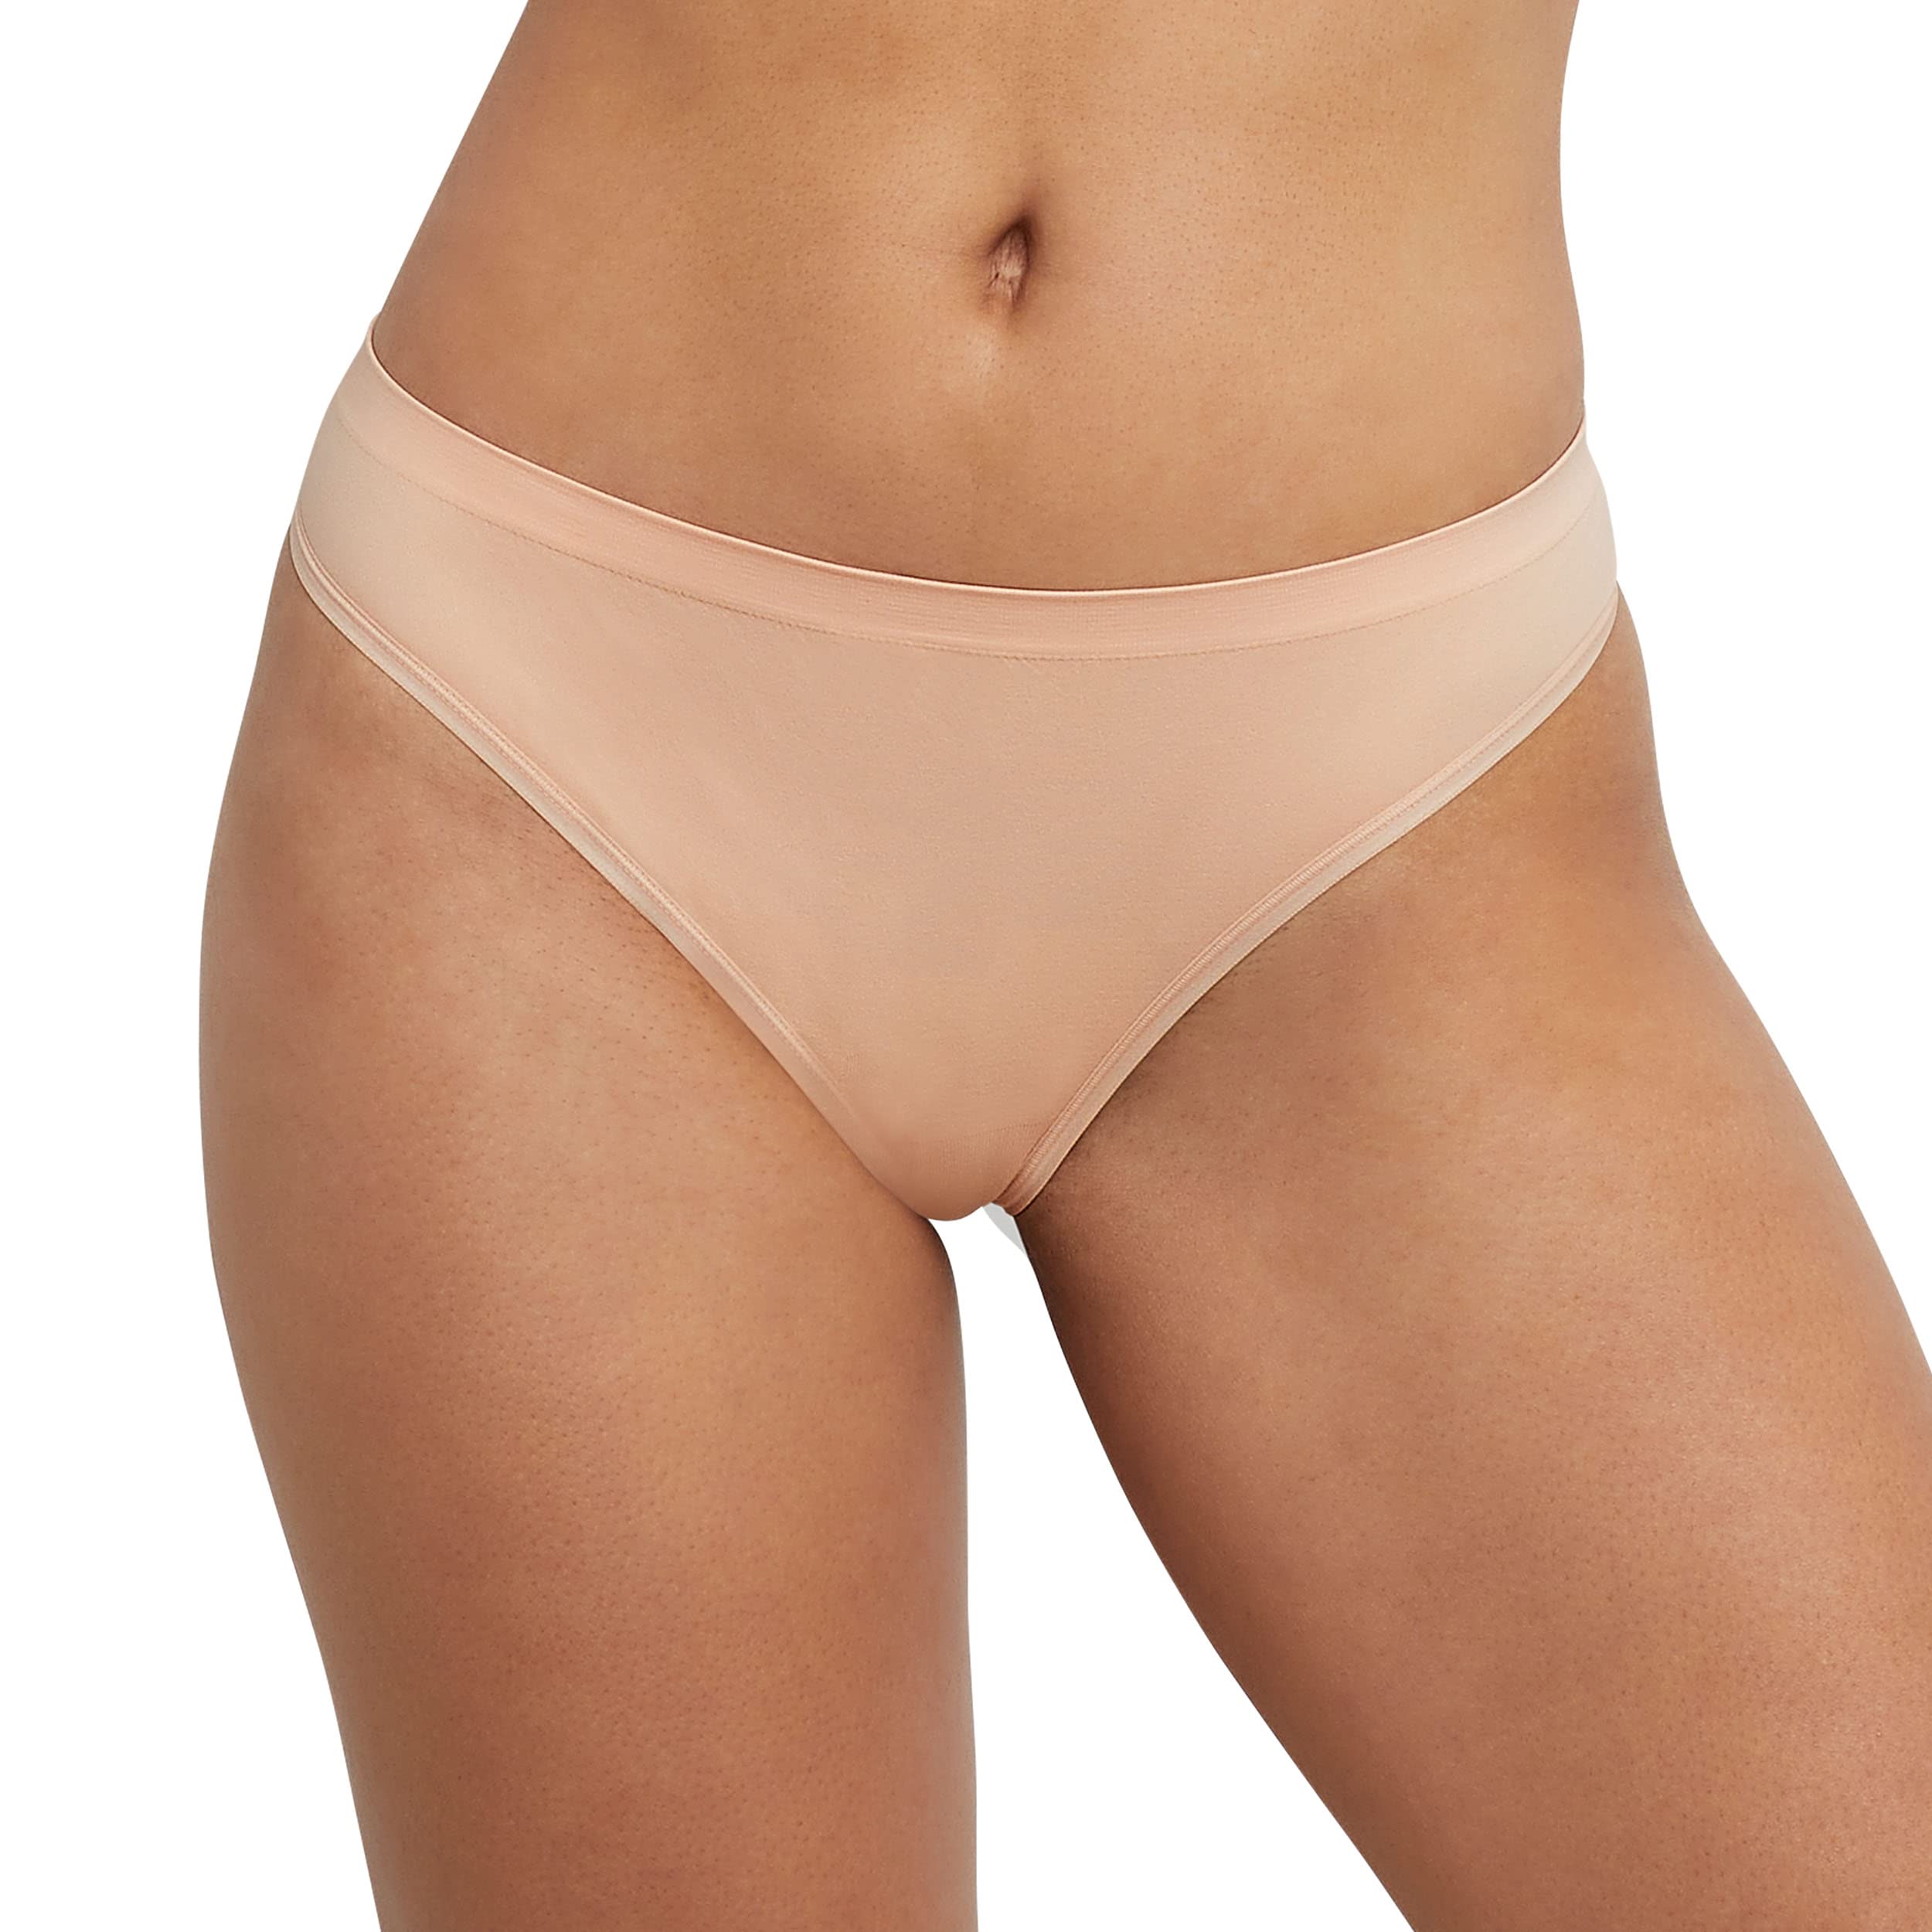 Hanes Women's Underwear Pack, ComfortFlex Fit Panties, Seamless Underwear, 6-Pack (Colors May Vary)